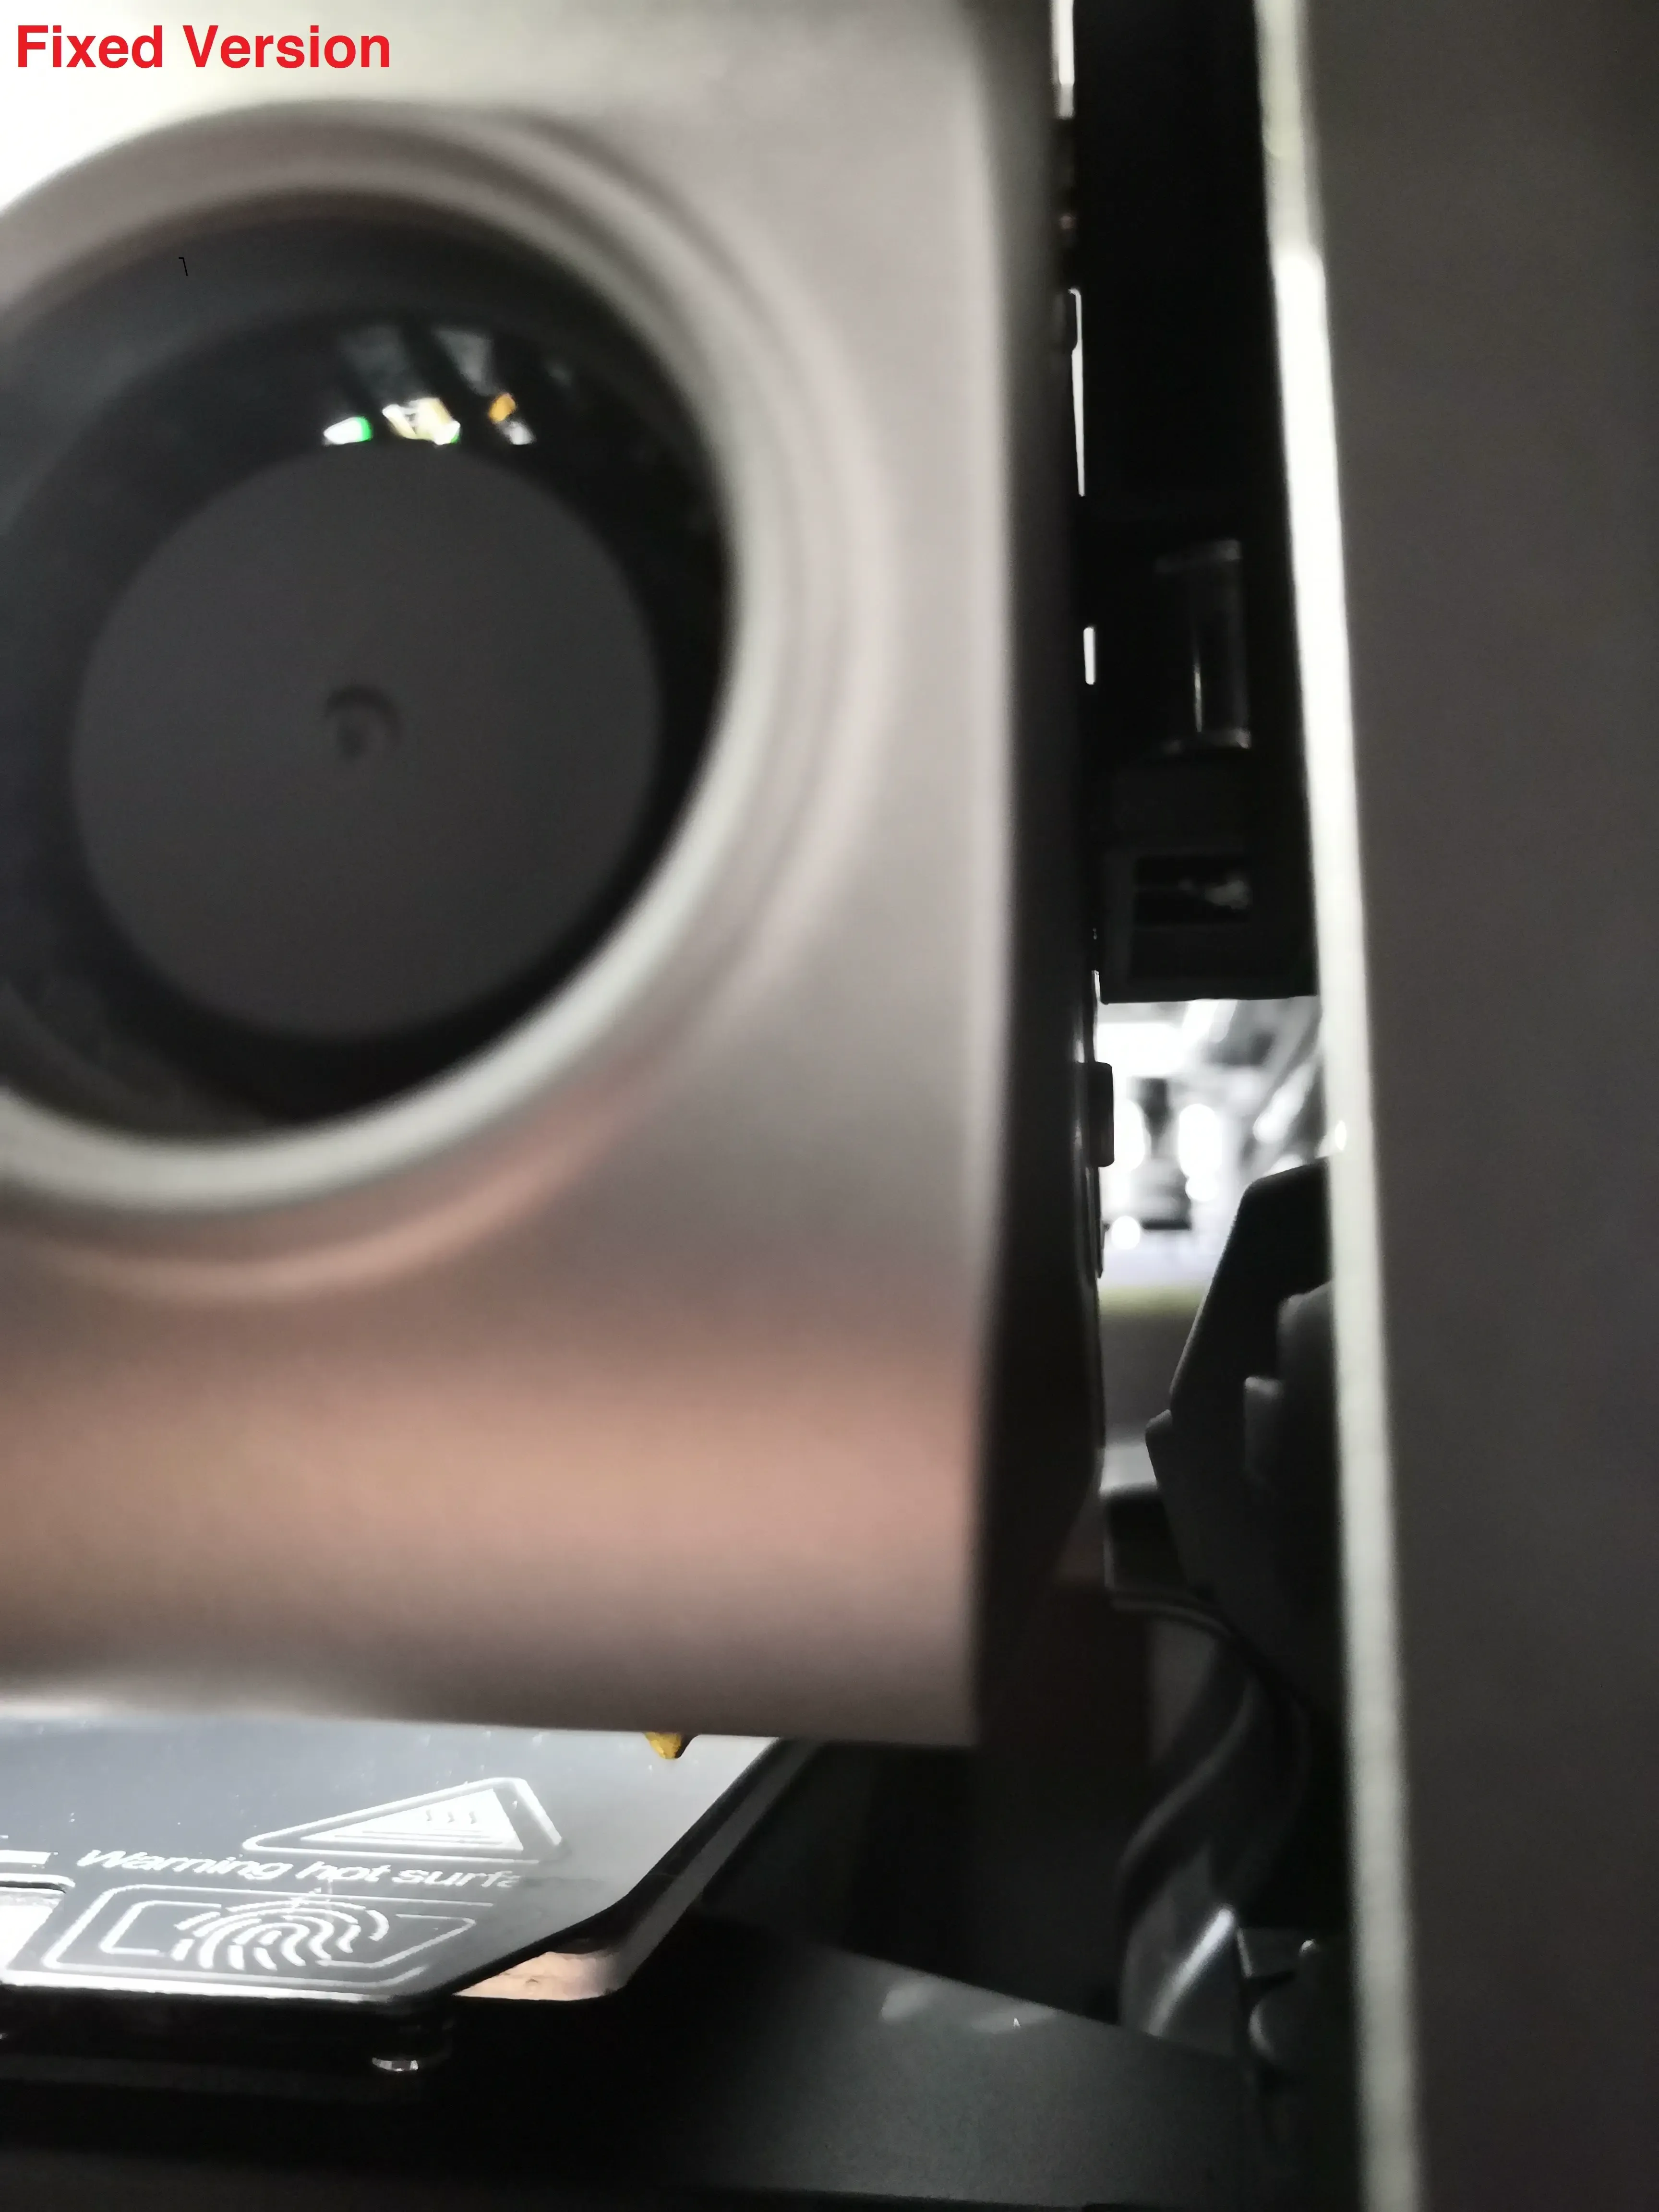 Creality K1/ K1 Max Camera Upgrade (Fixed & Adjustable Ver)